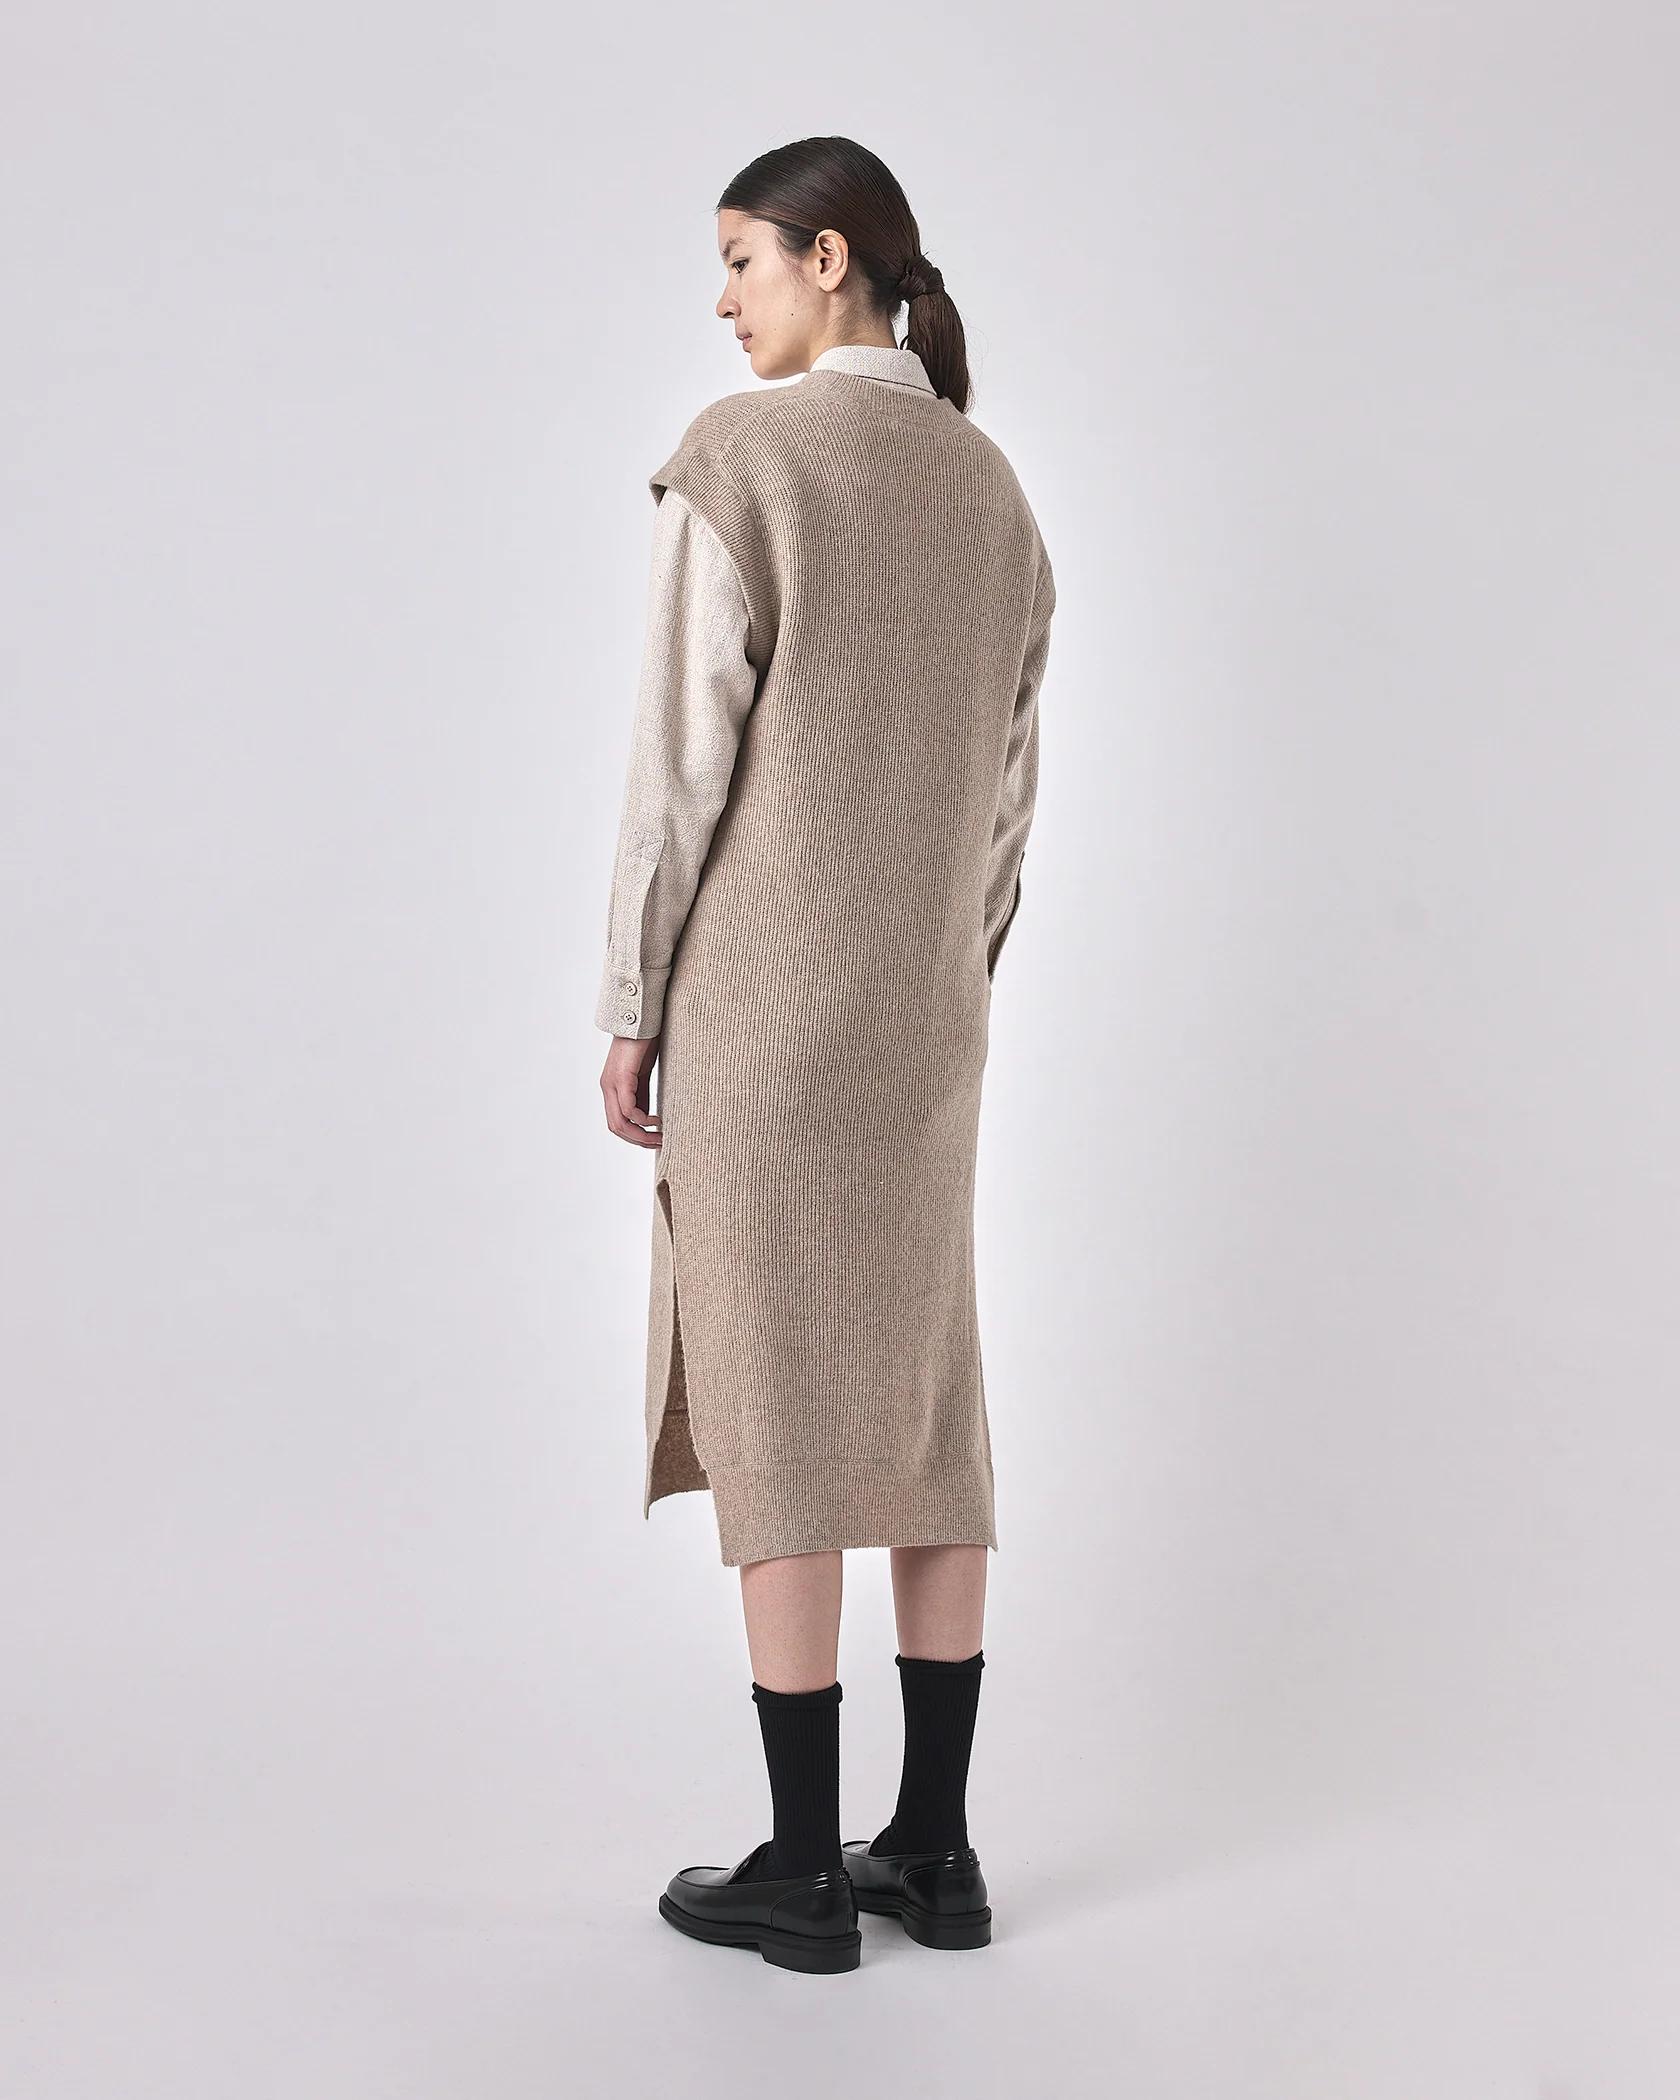 Product Image for Slit Vest Knit Dress, Light Taupe